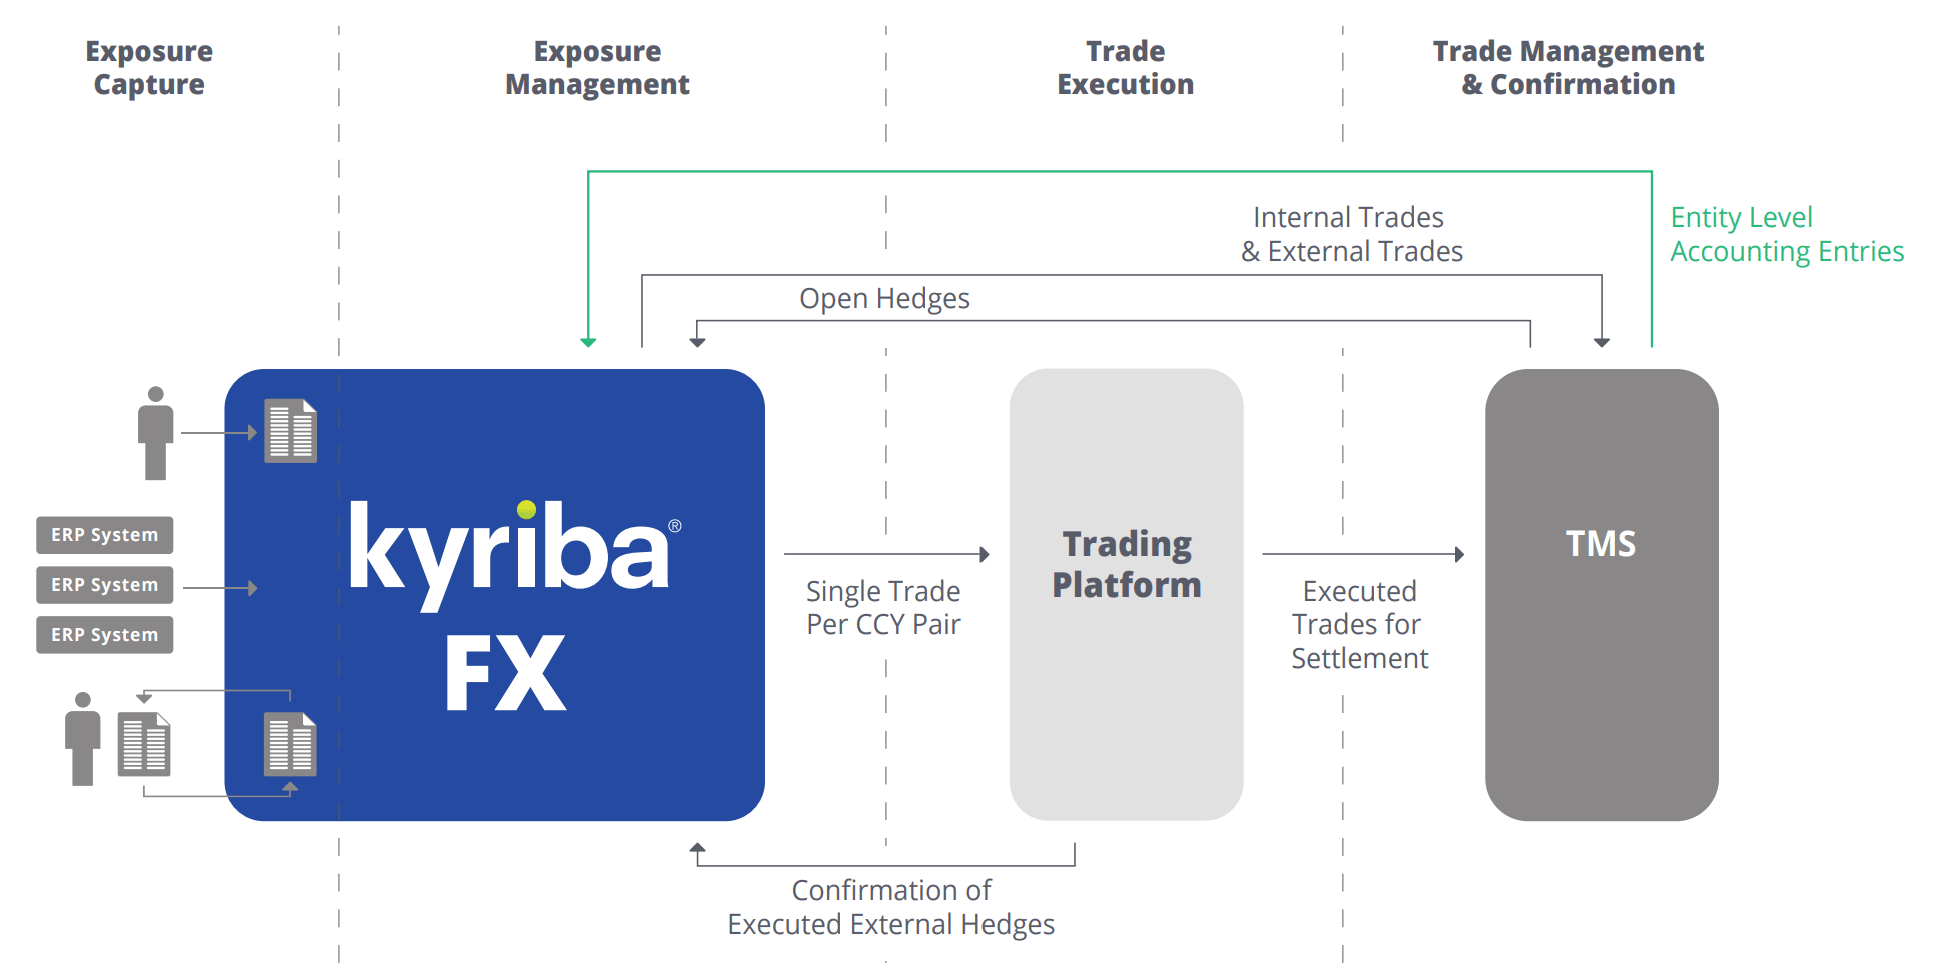 Kyriba FX Trading Platform